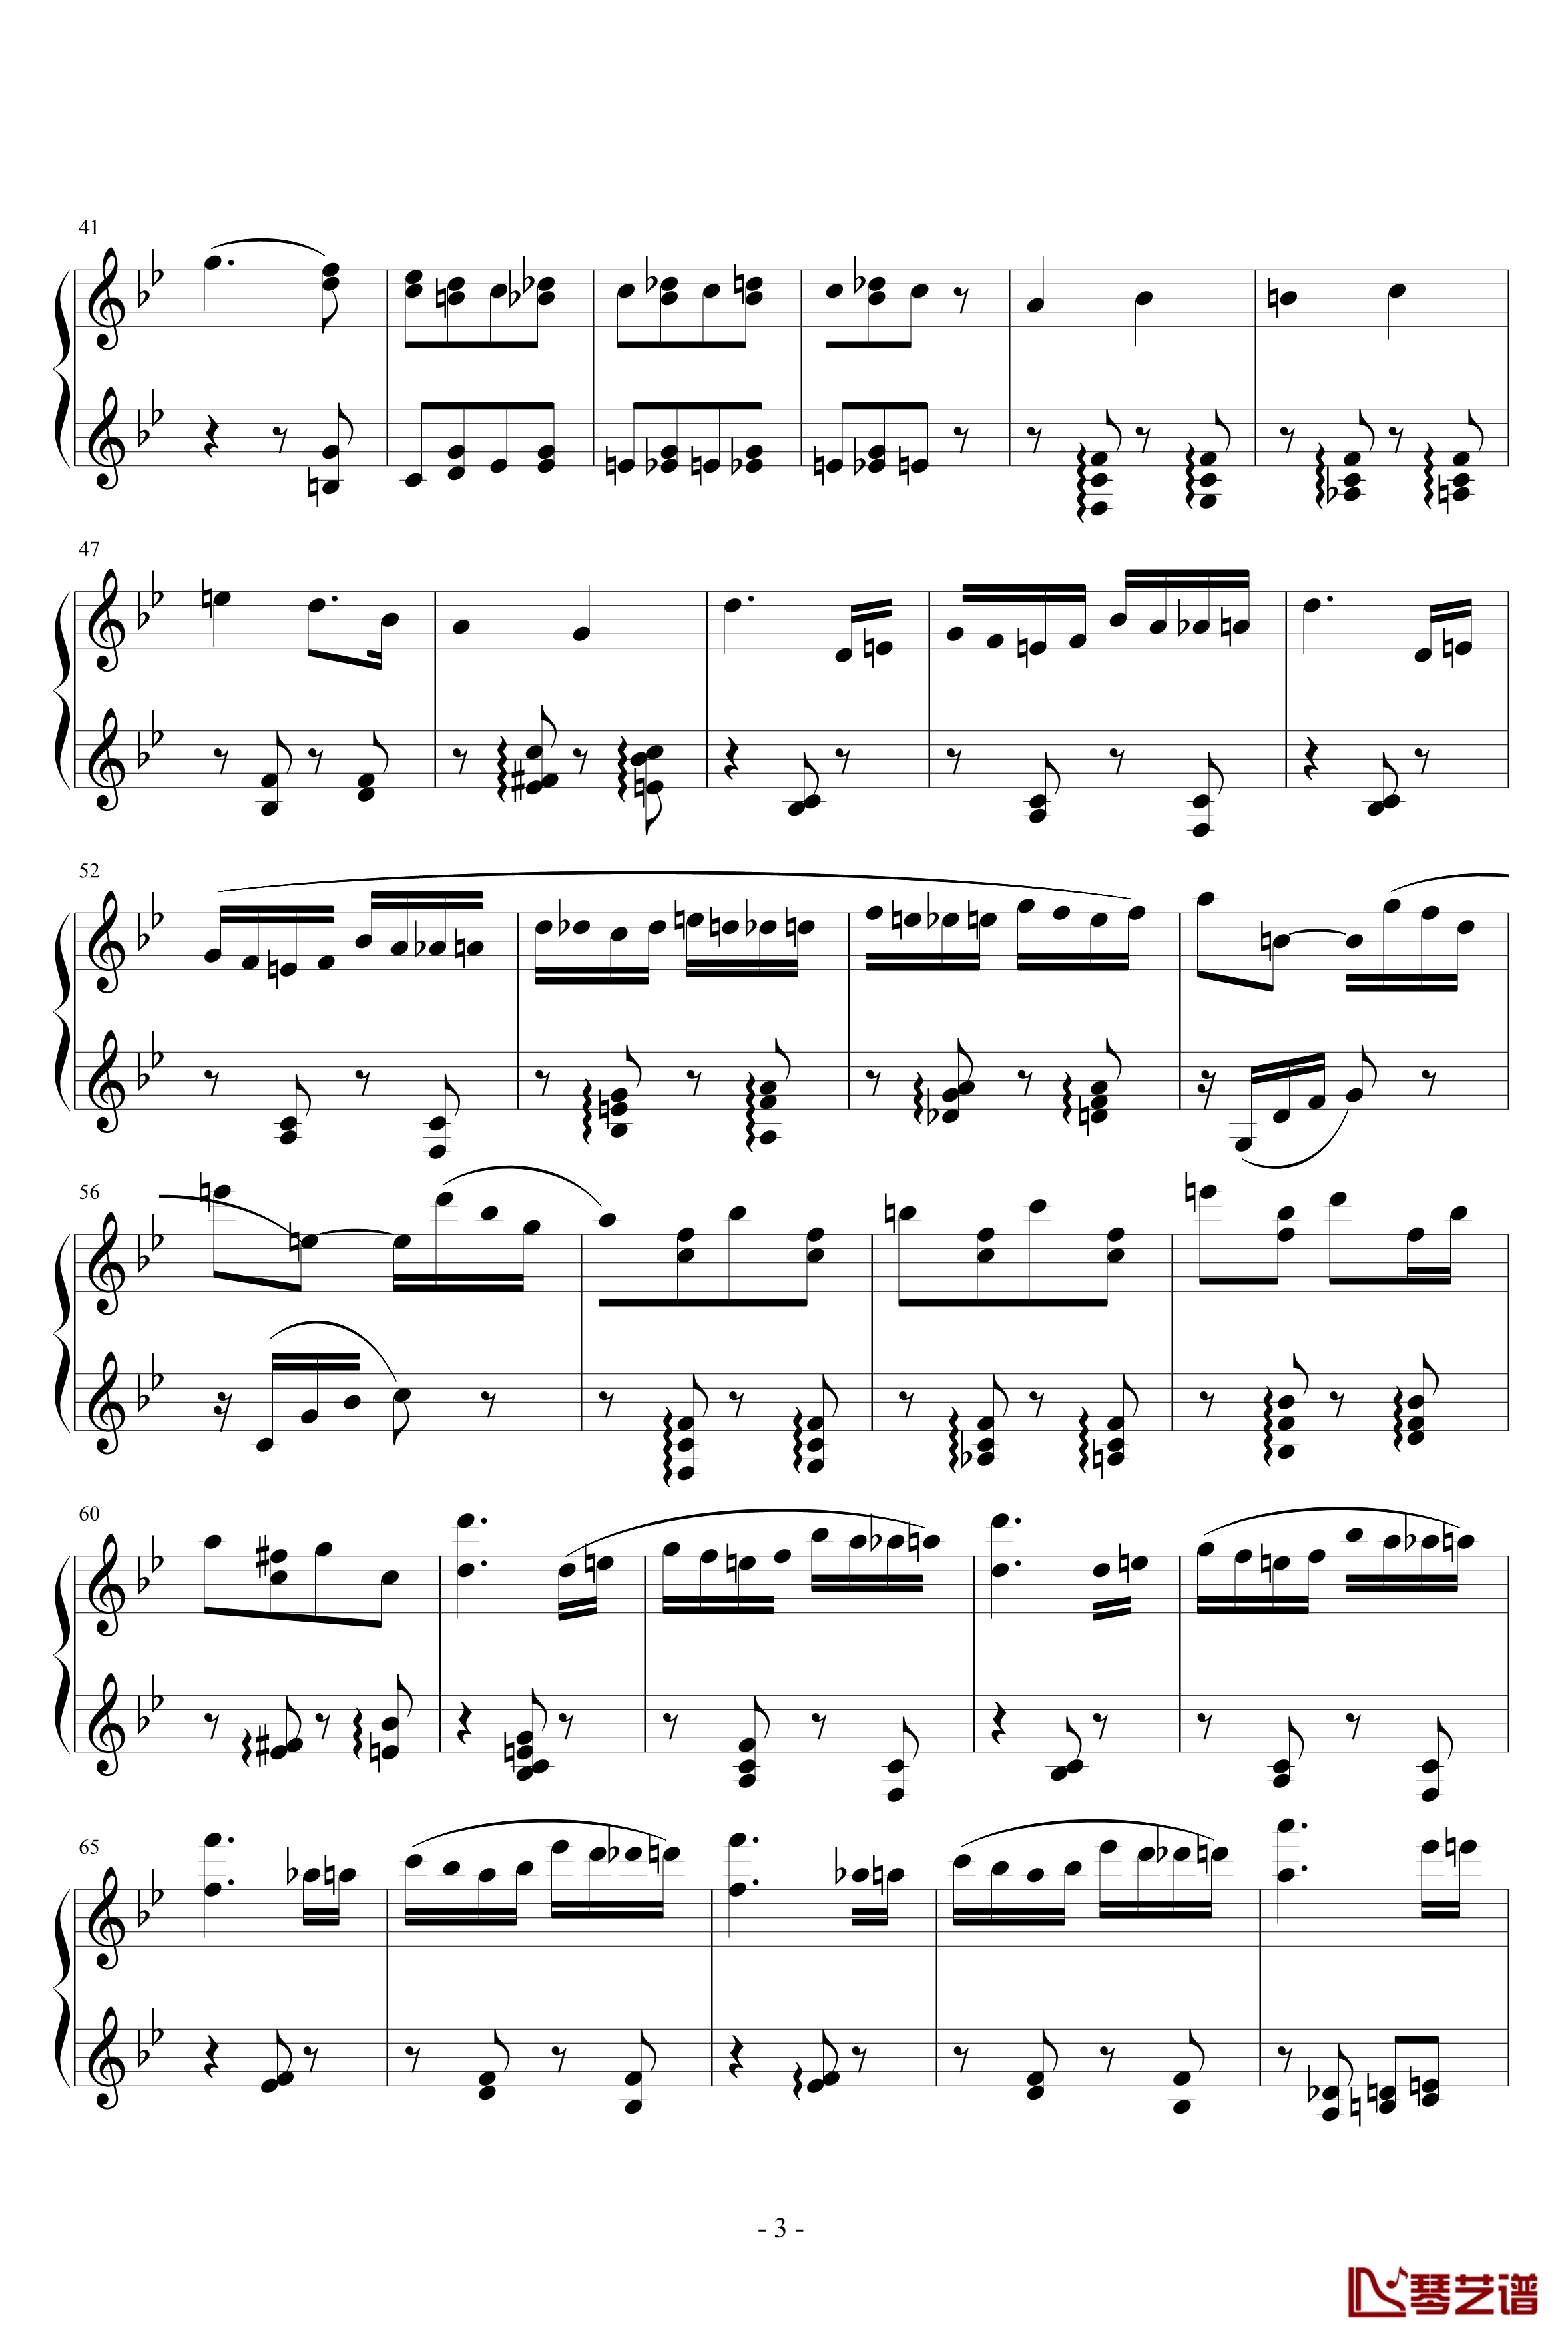 胡桃夹子序曲钢琴谱-柴科夫斯基-Peter Ilyich Tchaikovsky3